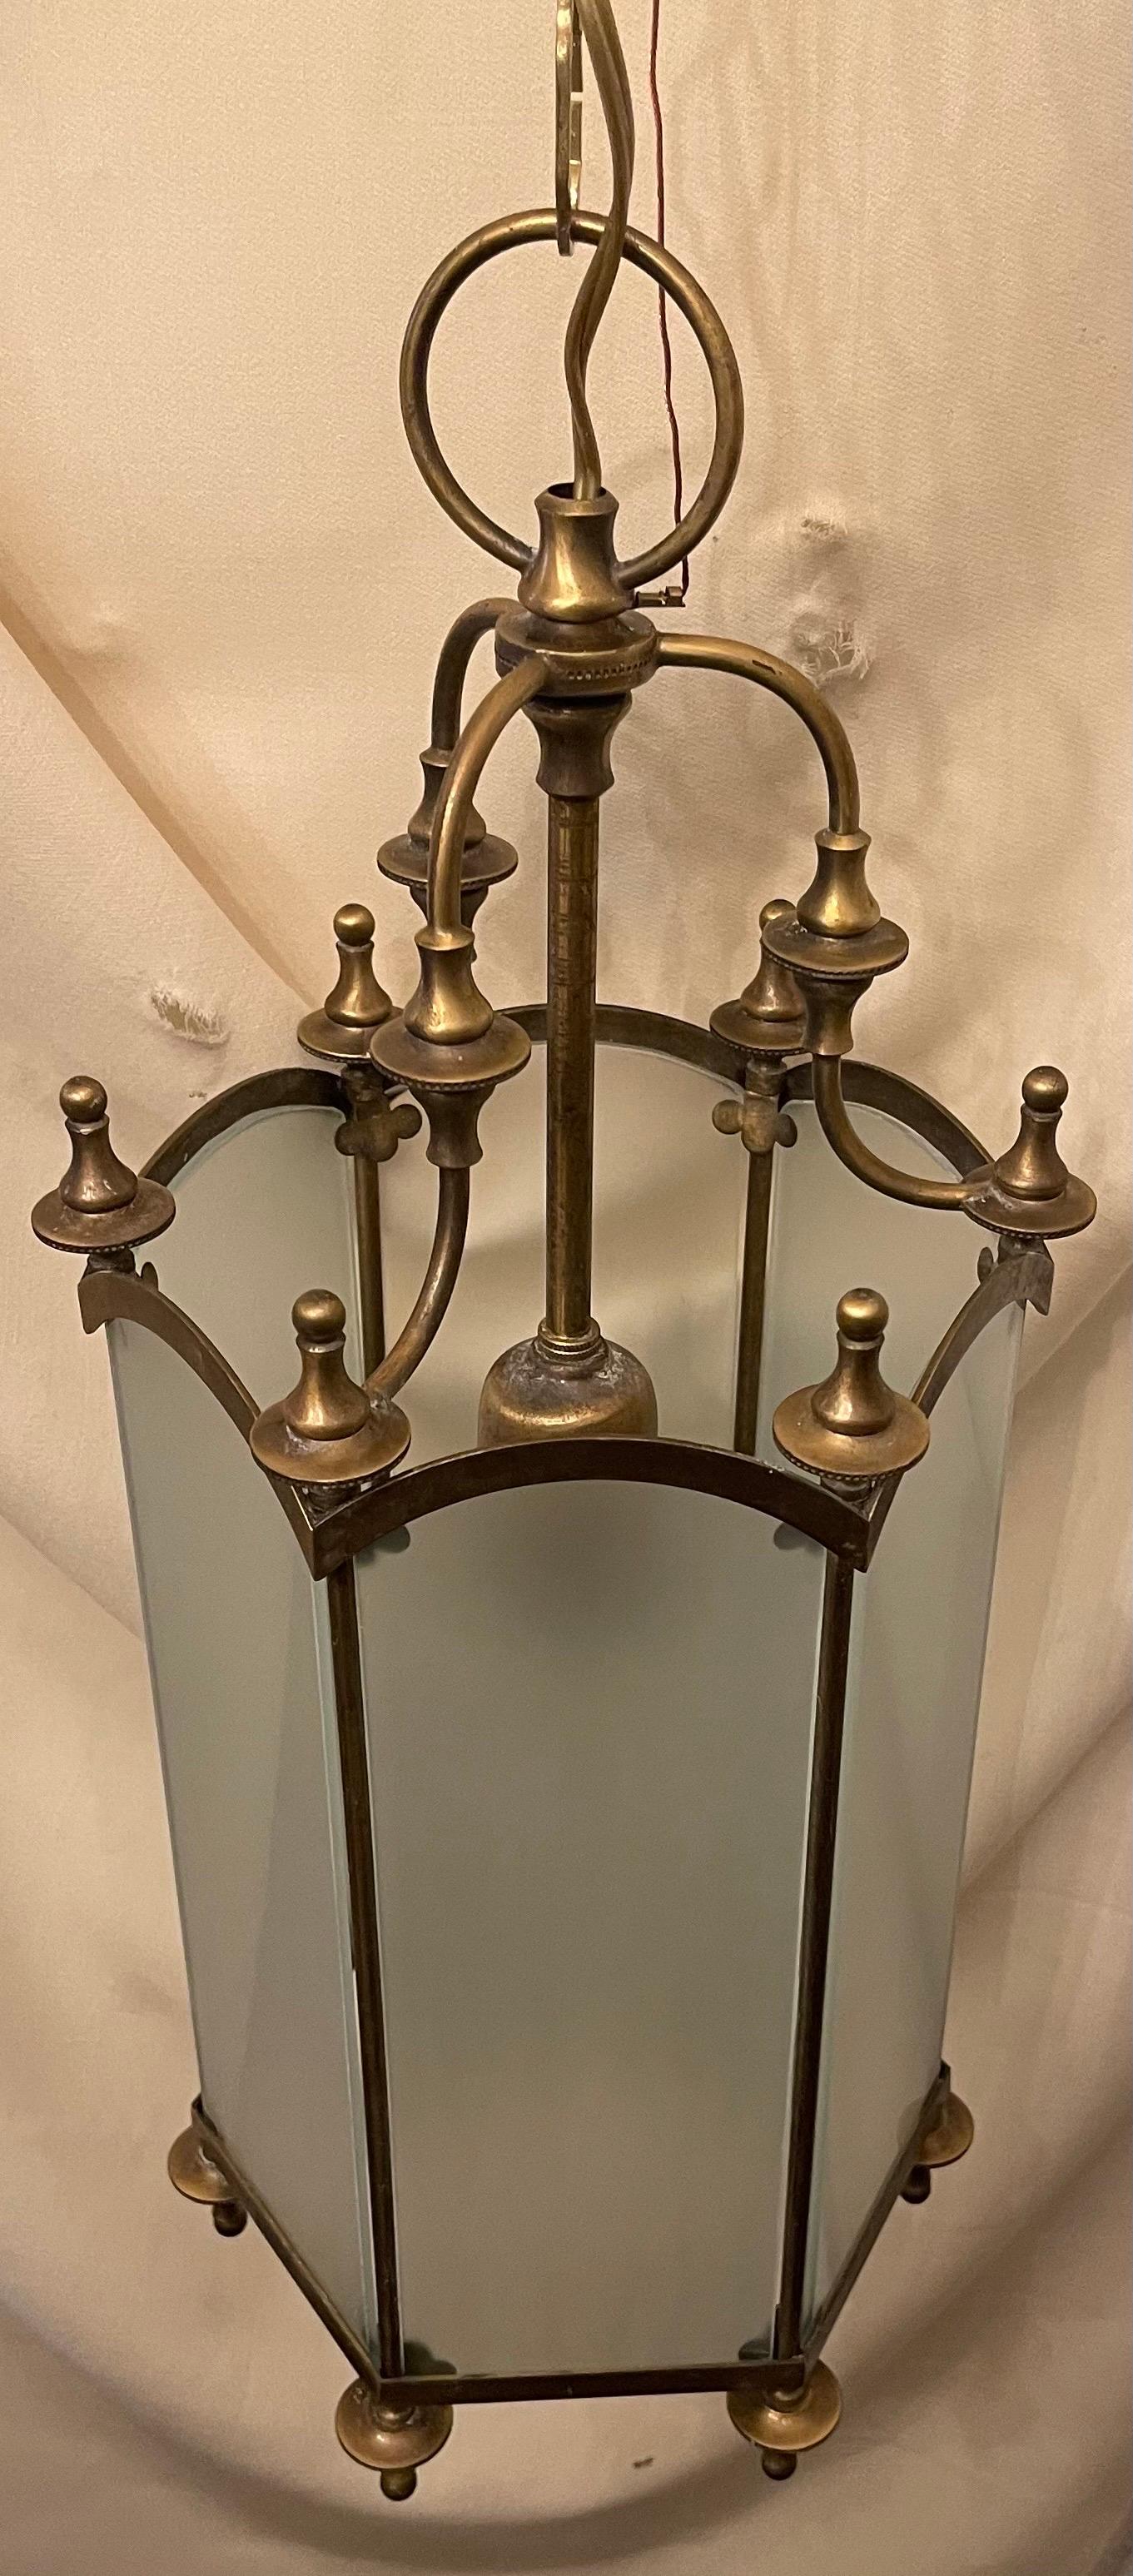 Eine wunderbare, sechseckige Laterne im Regency-Stil aus Bronze/Messing mit Milchglasscheibe und Endstücken.